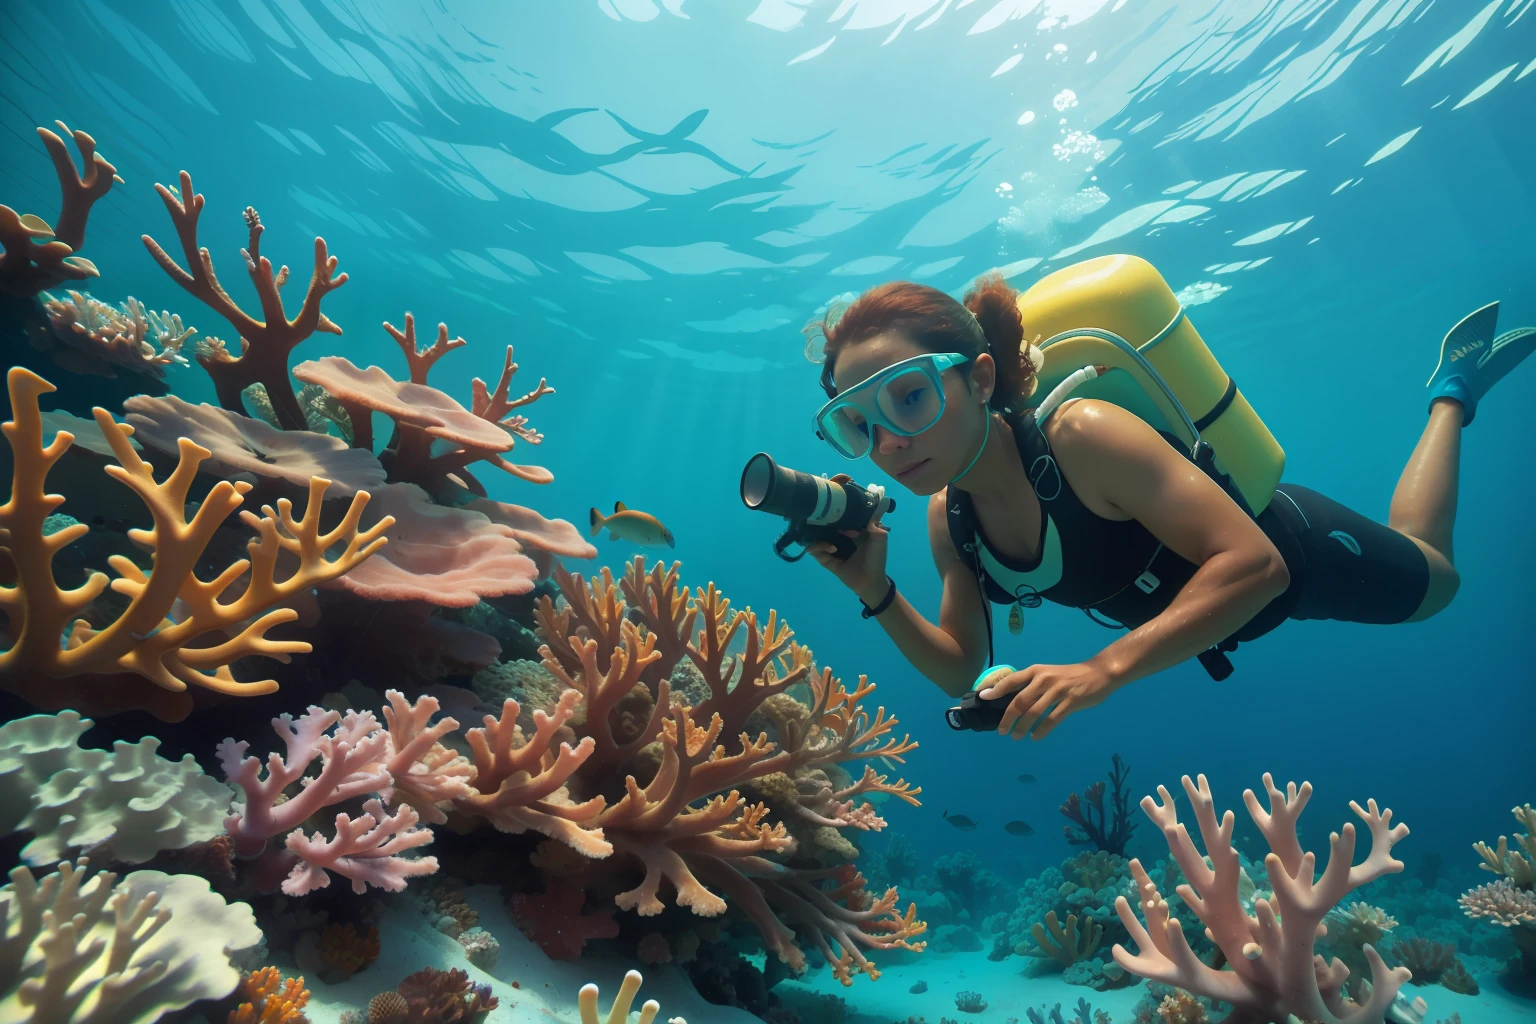 Data: 2013
País: Descrição das Bahamas: um biólogo marinho adulto das Bahamas estuda cuidadosamente recifes de corais vibrantes debaixo d&#39;água, adicionando um elemento de gestão ambiental à atmosfera.